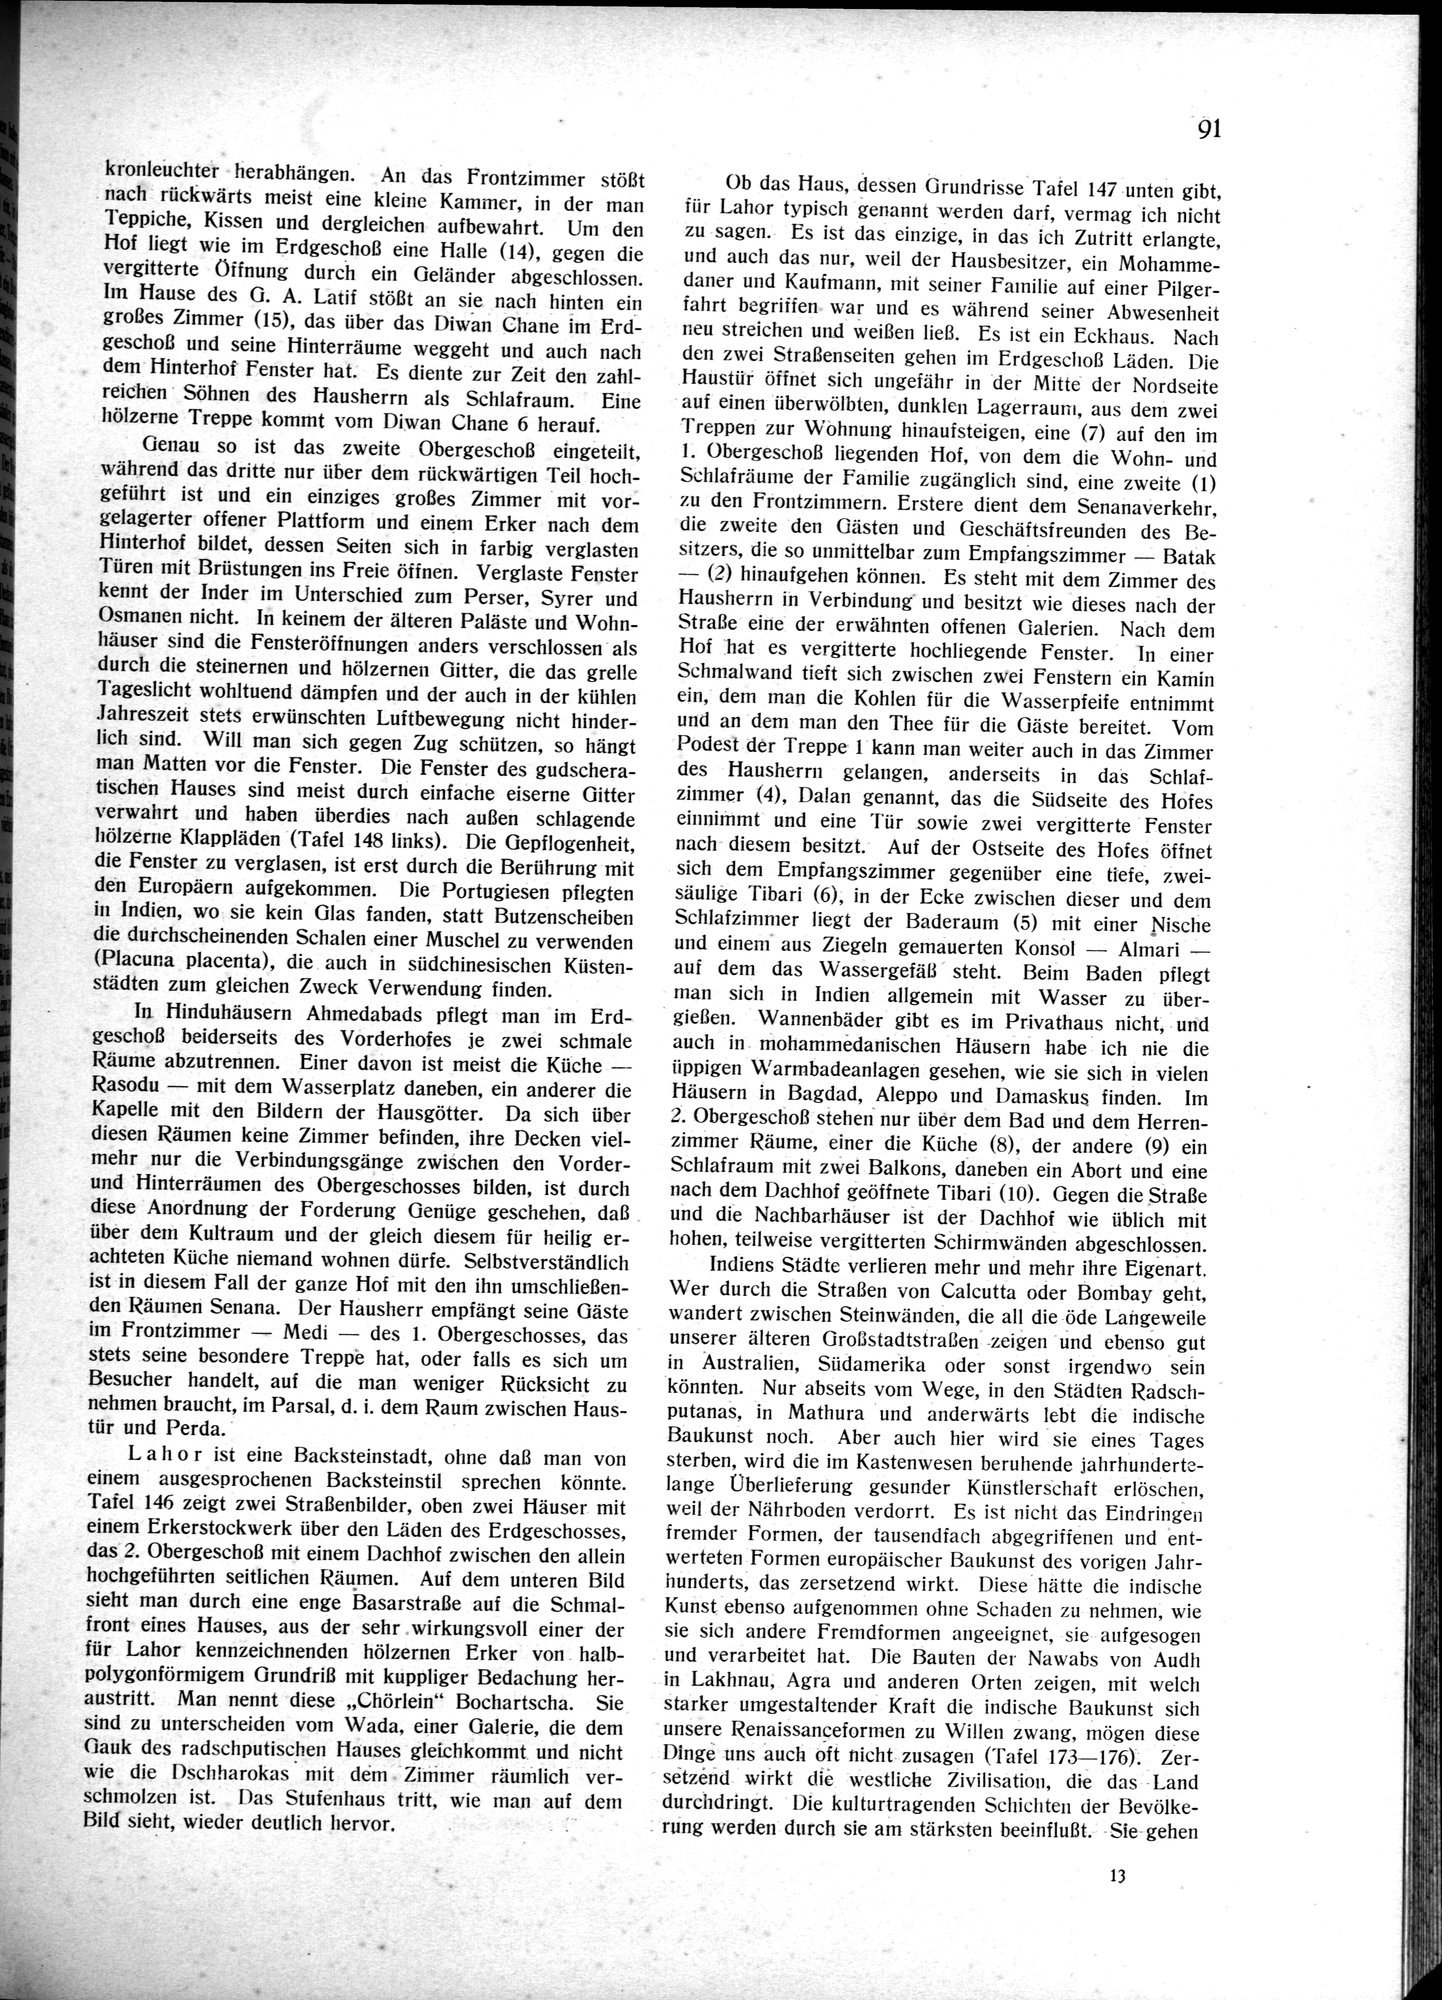 Indische Palaste und Wohnhauser : vol.1 / Page 101 (Grayscale High Resolution Image)